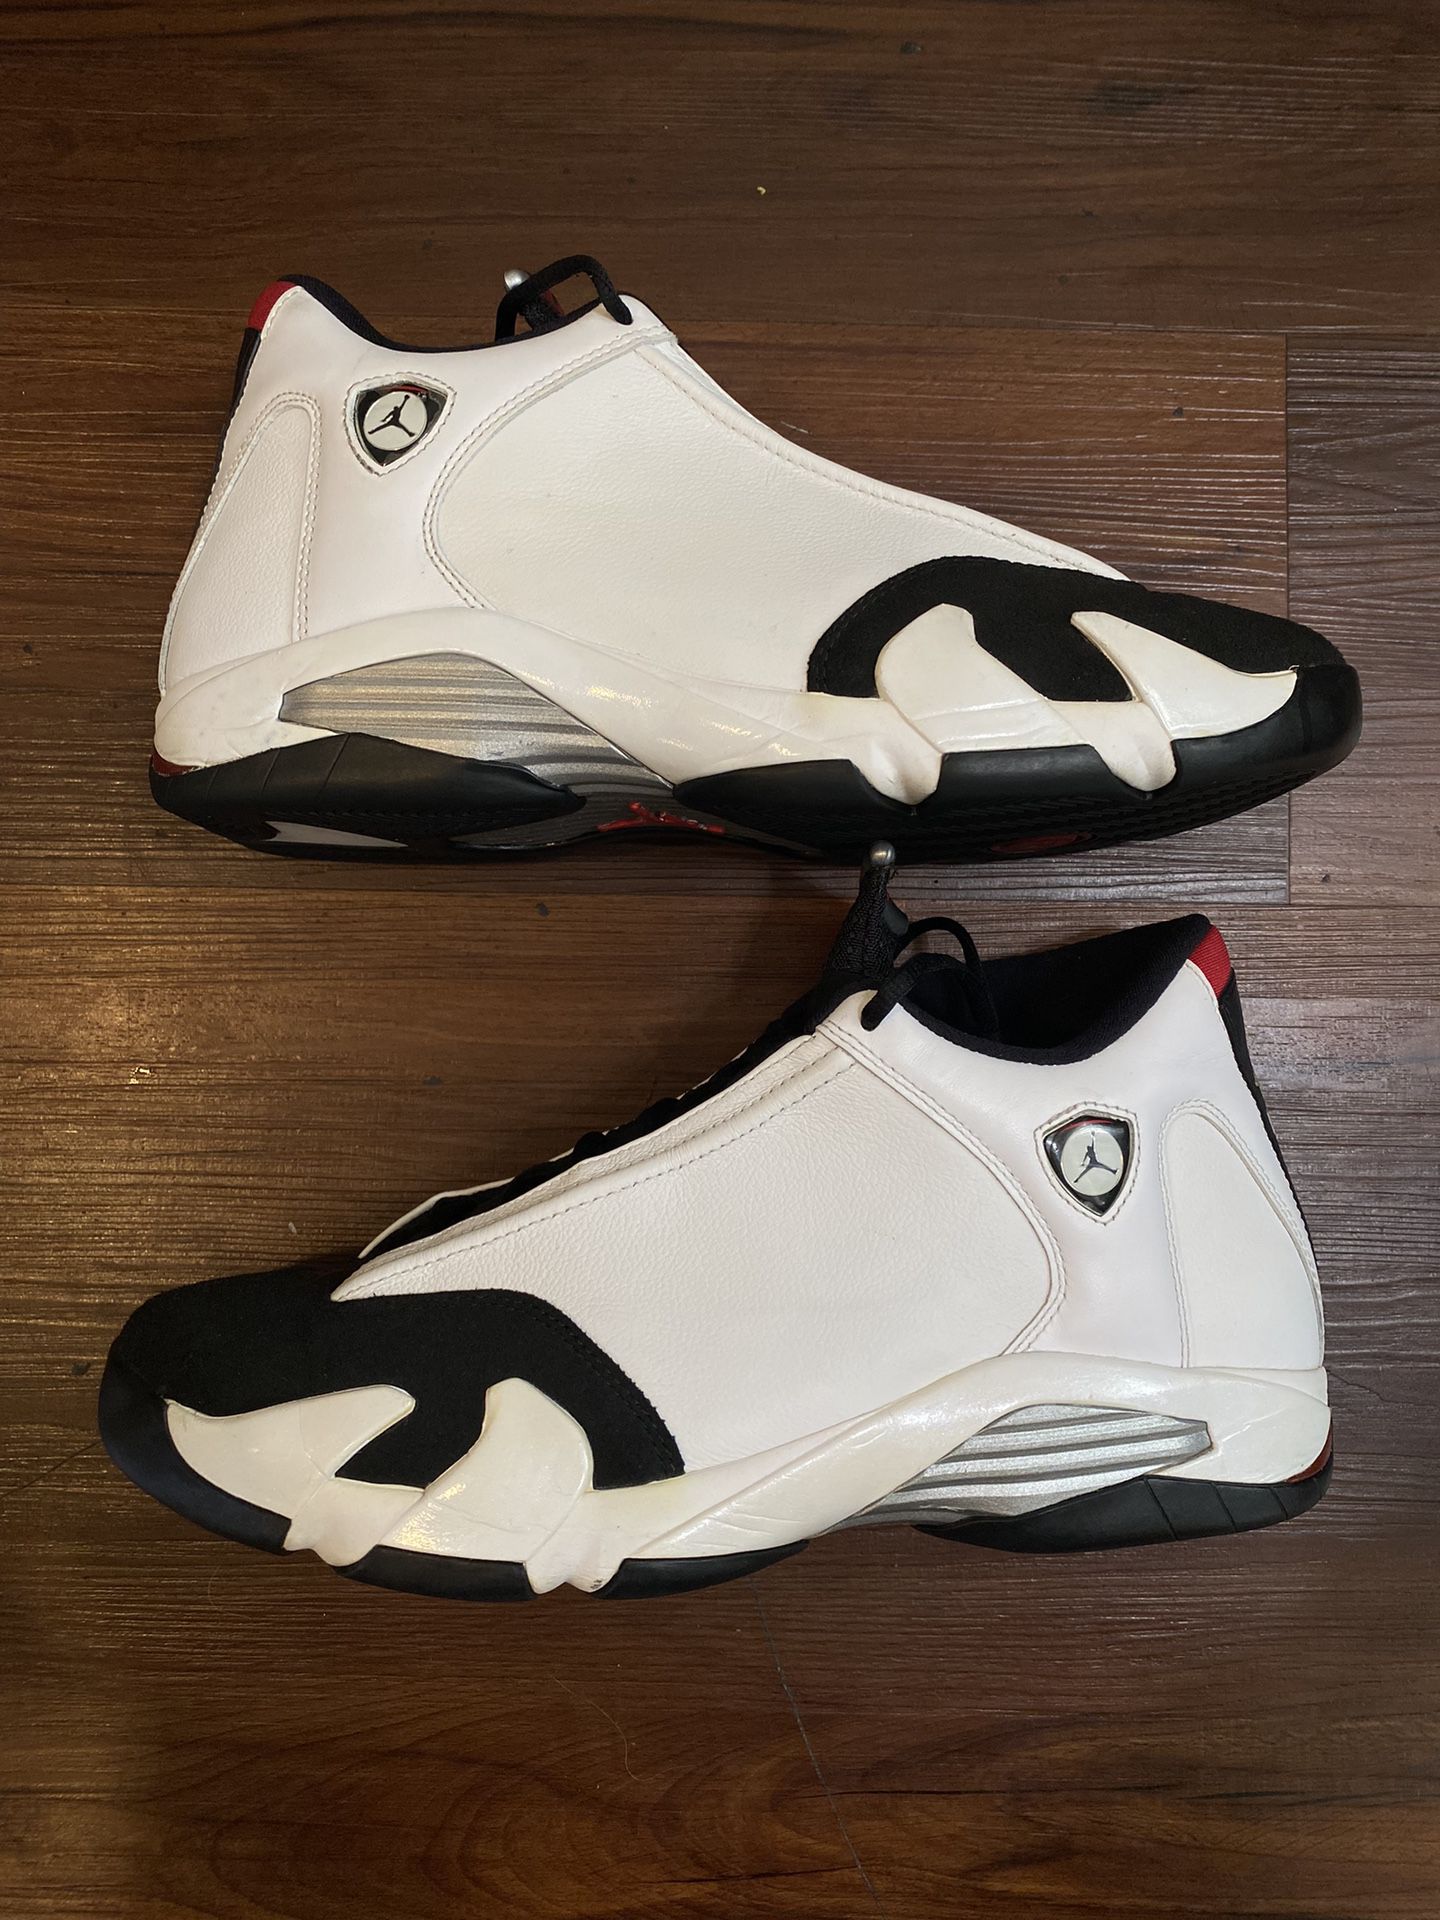 Size 13 - Air Jordan 14 Black Toe (2014)